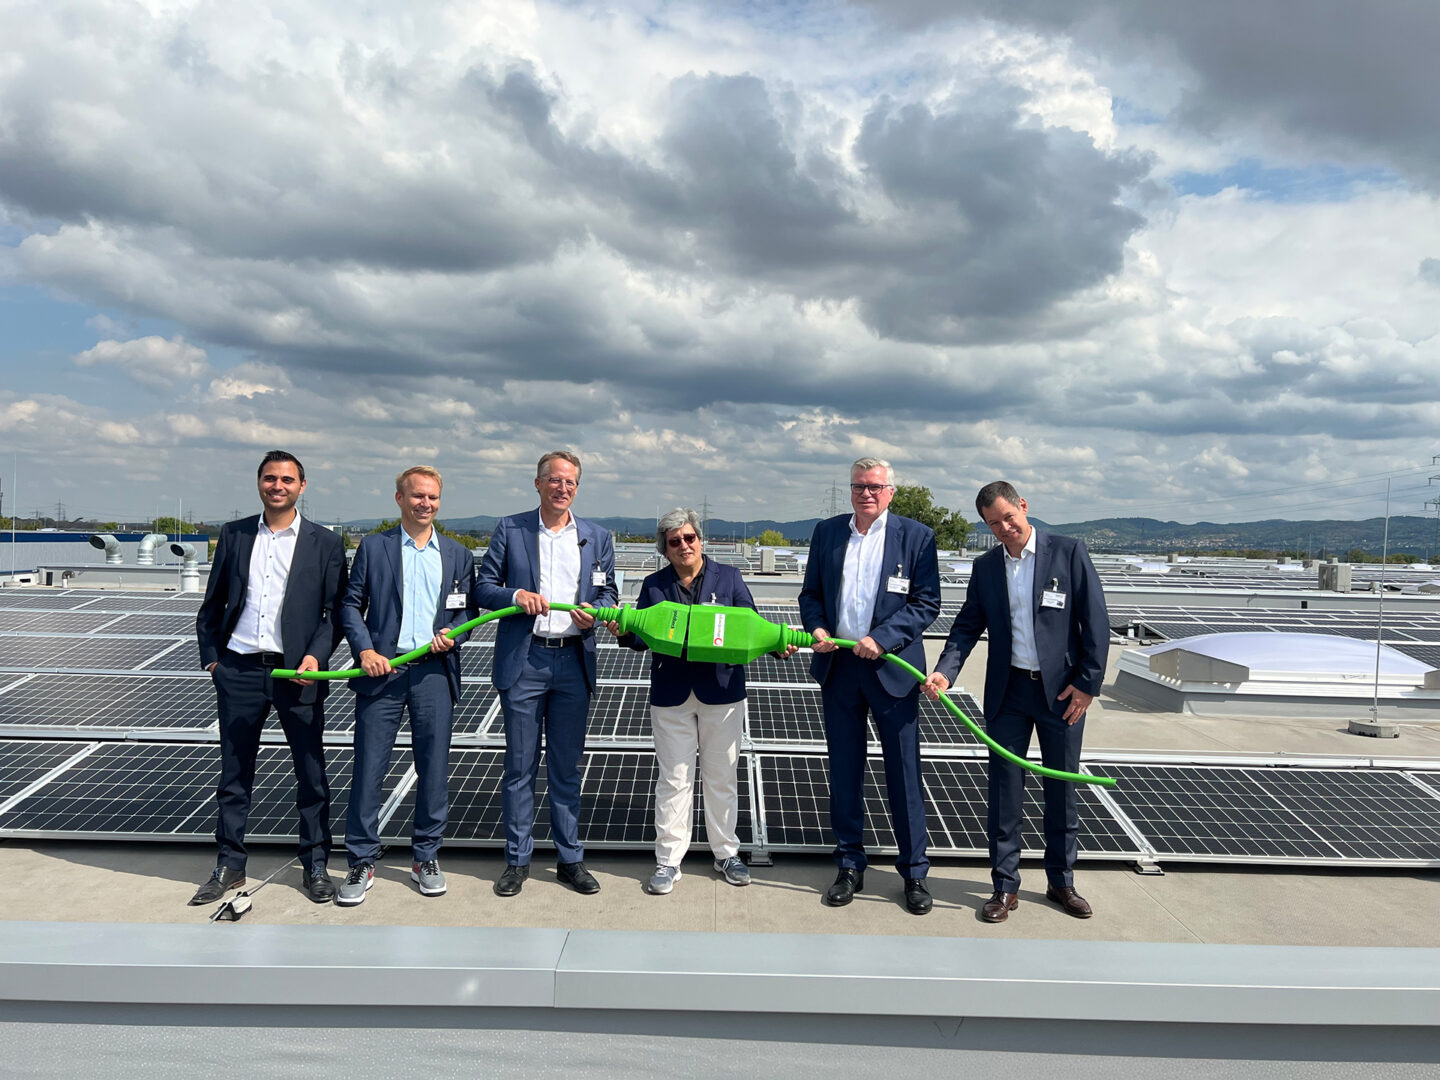 Ein Gruppenbild der Verantwortlichen bei der Einweihung des Solardaches Ladenburg. Sie halten einen großen grünen Stecker.